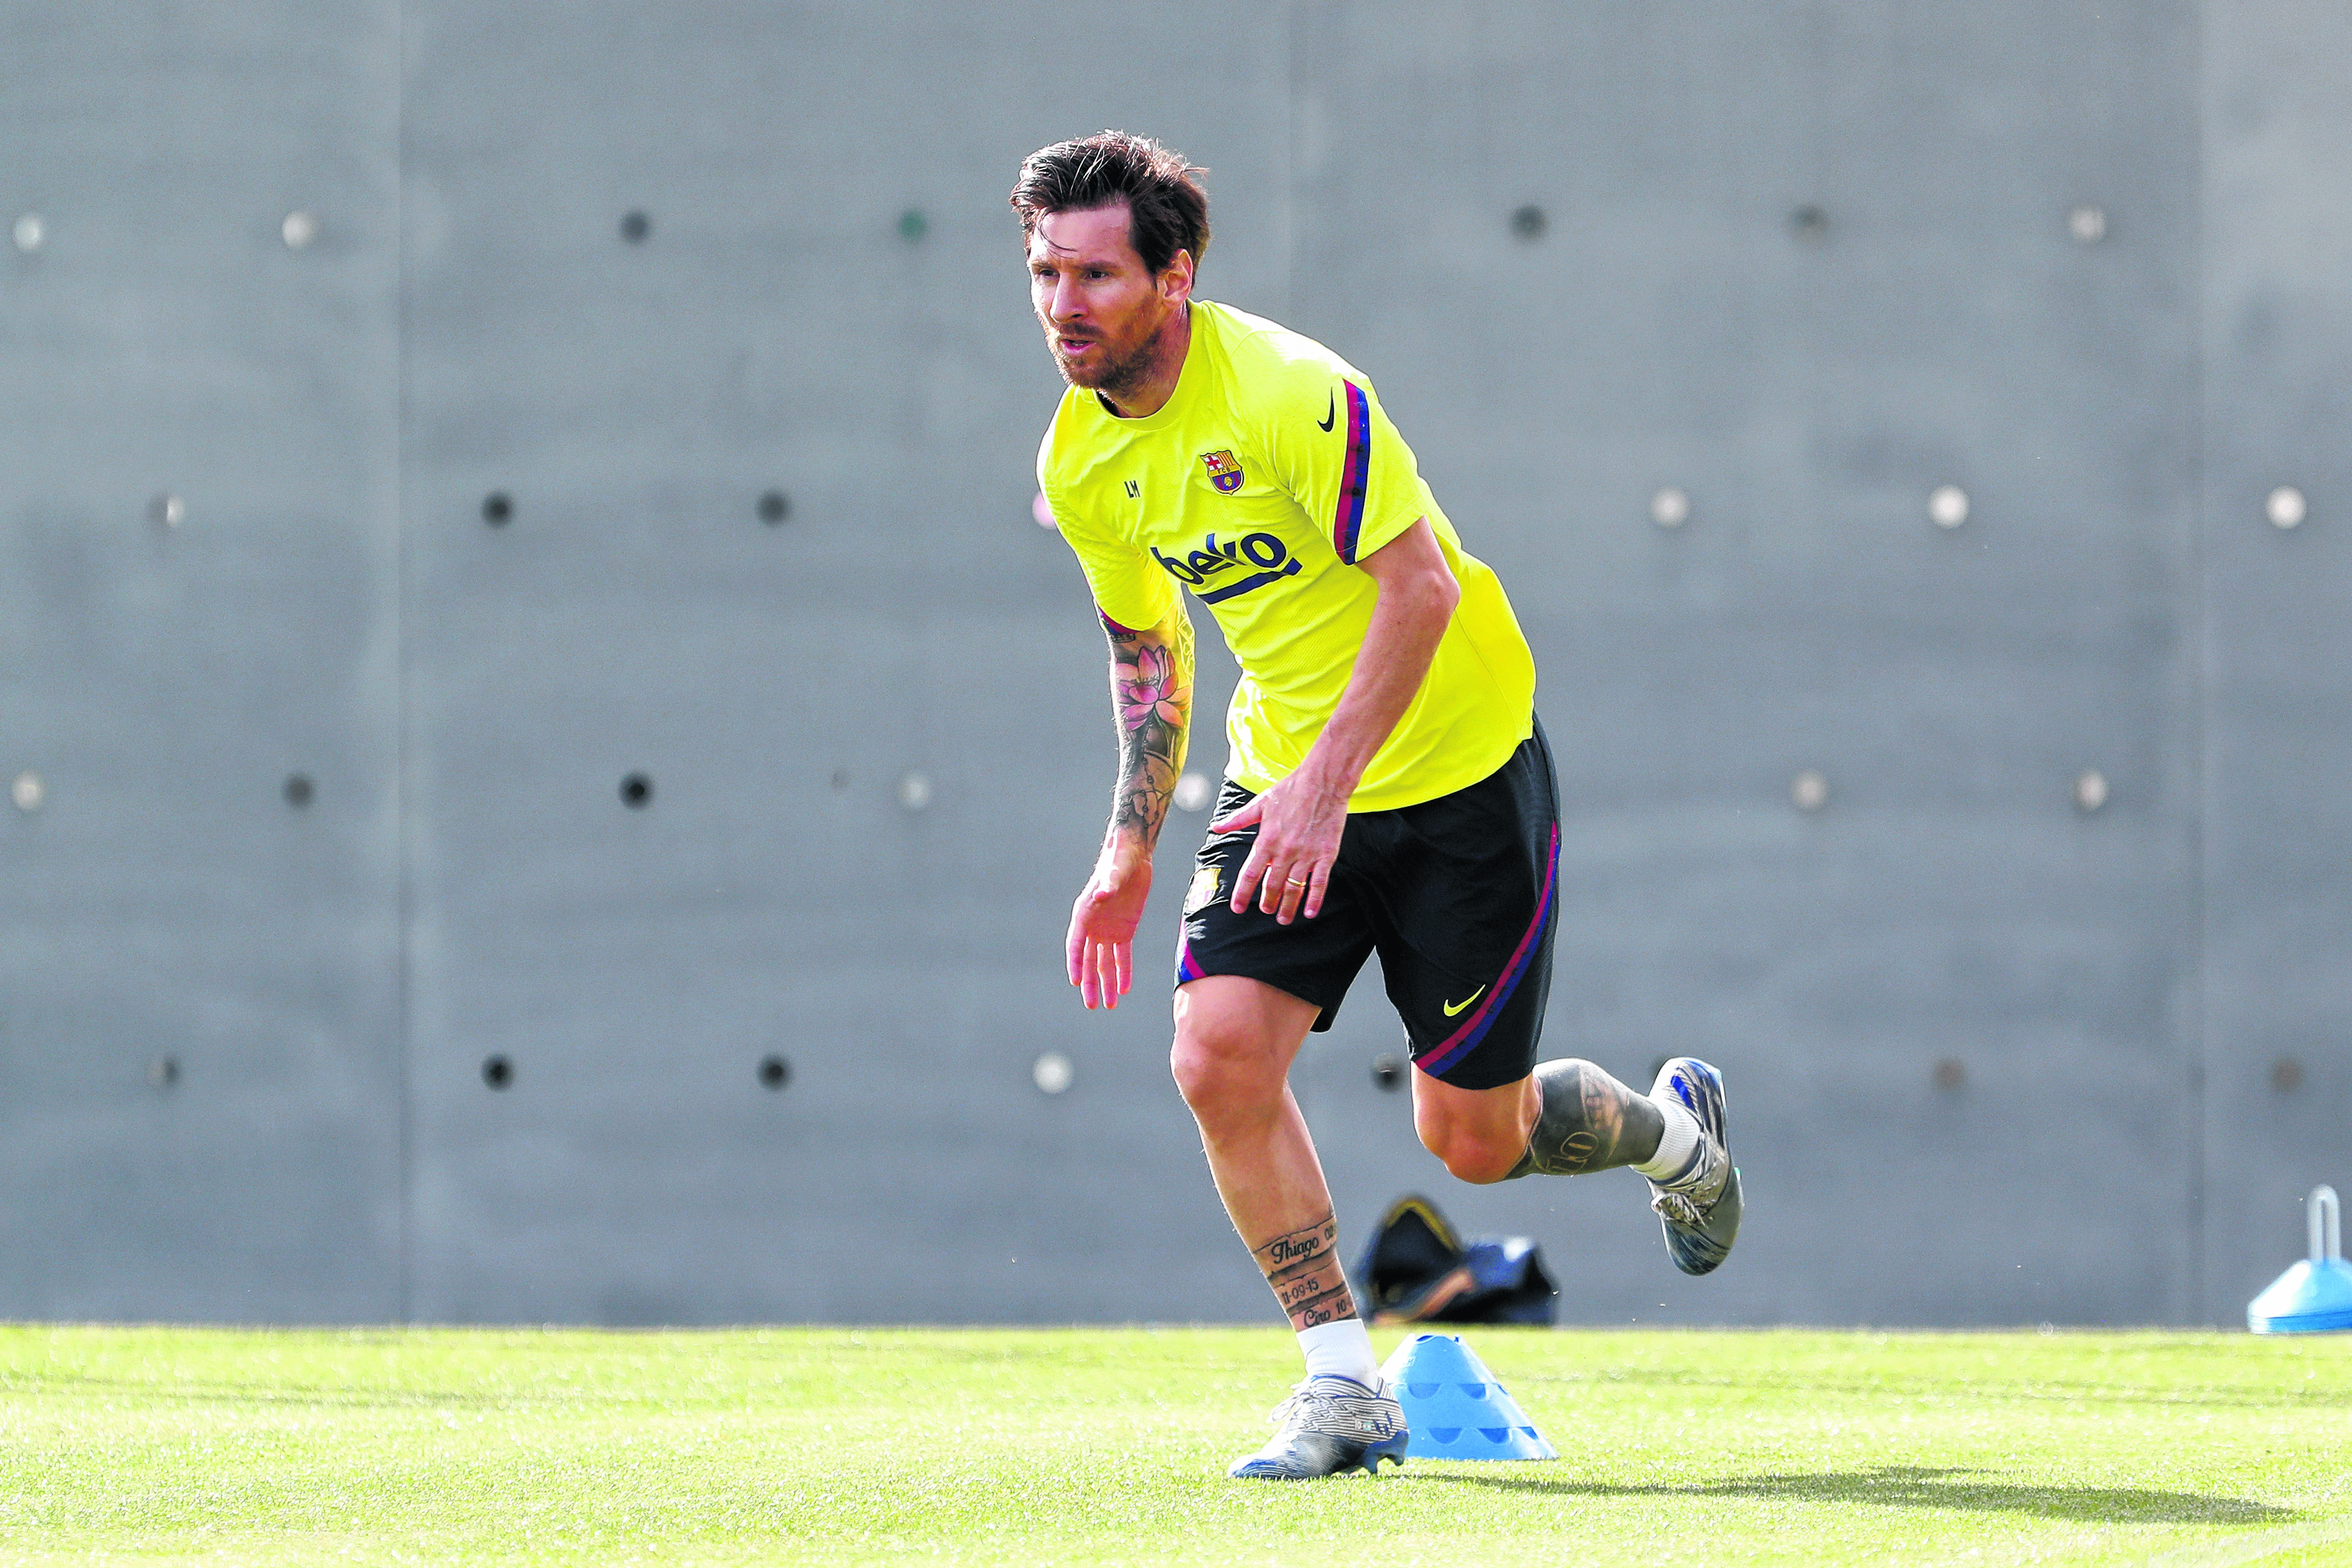 El plantel de Barcelona encabezado por Lionel Messi, pasa a la fase 3 del protocolo de sanidad ideado para los equipos españoles. (Foto/AP)